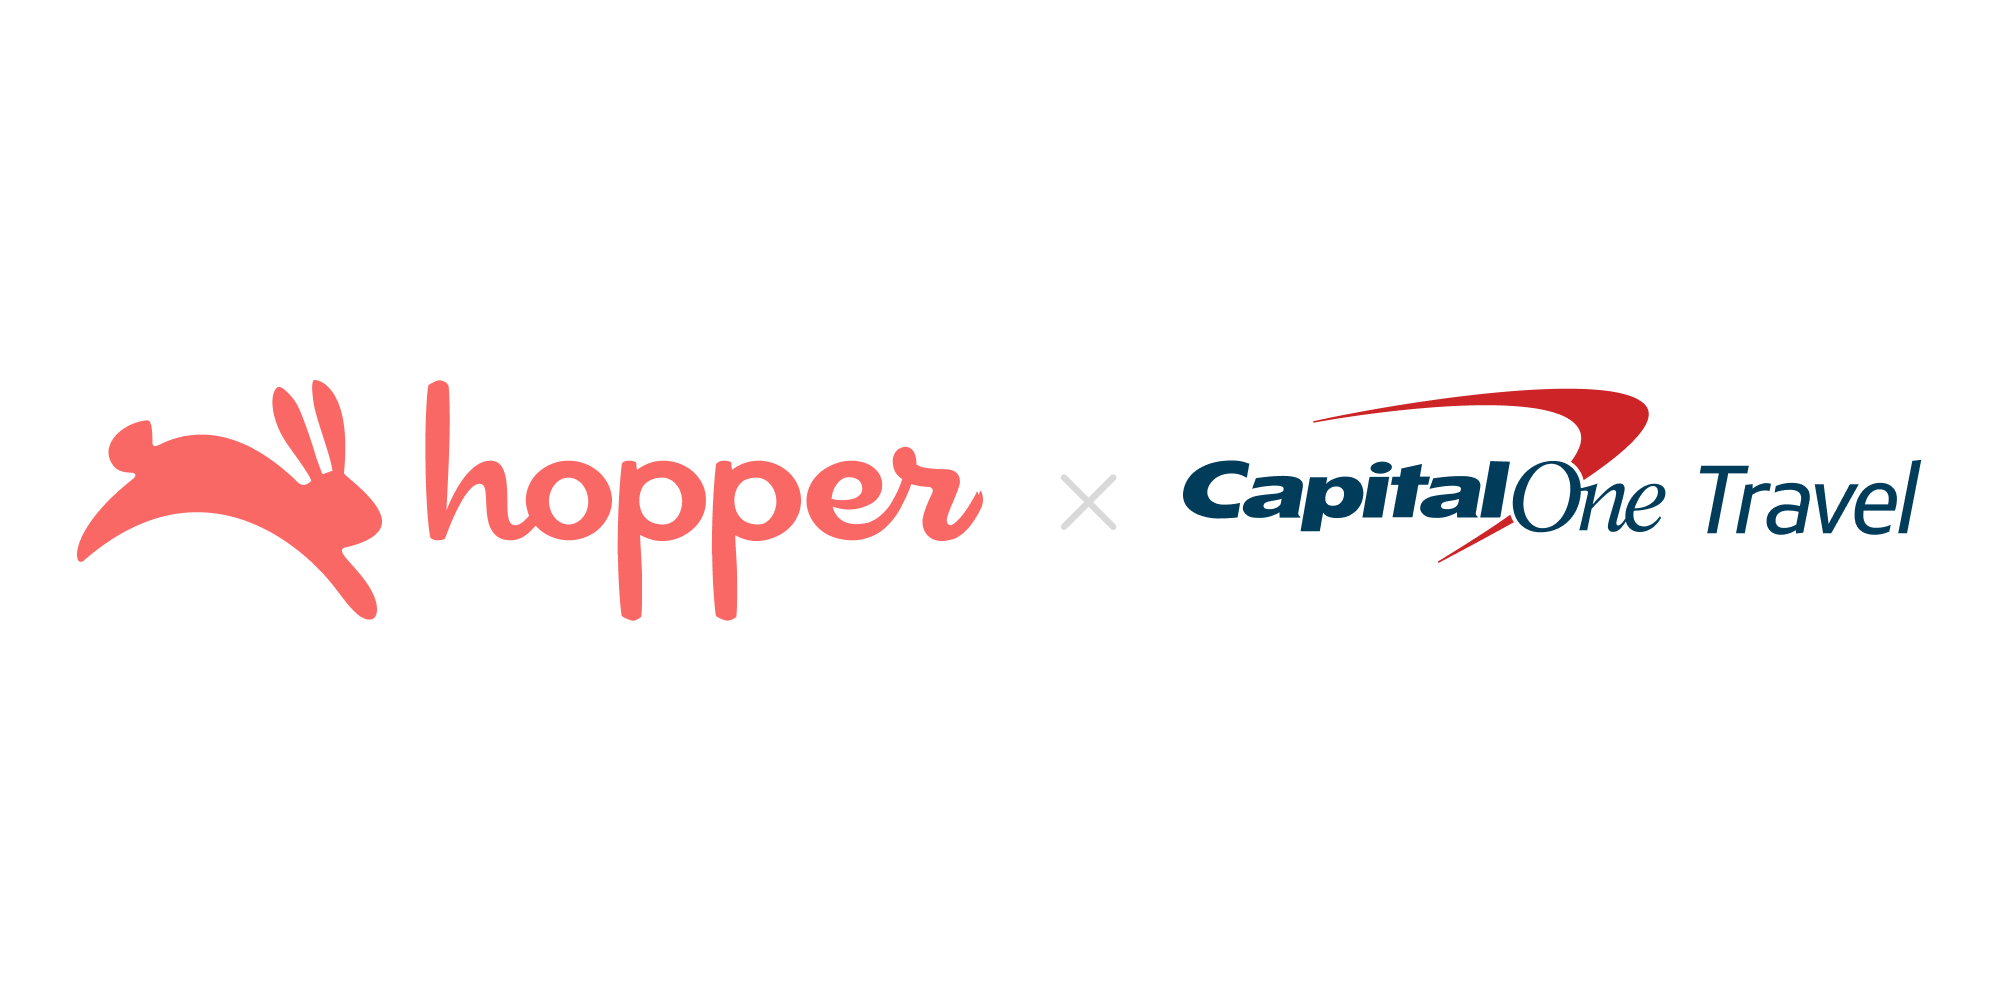 Hopper Capital One